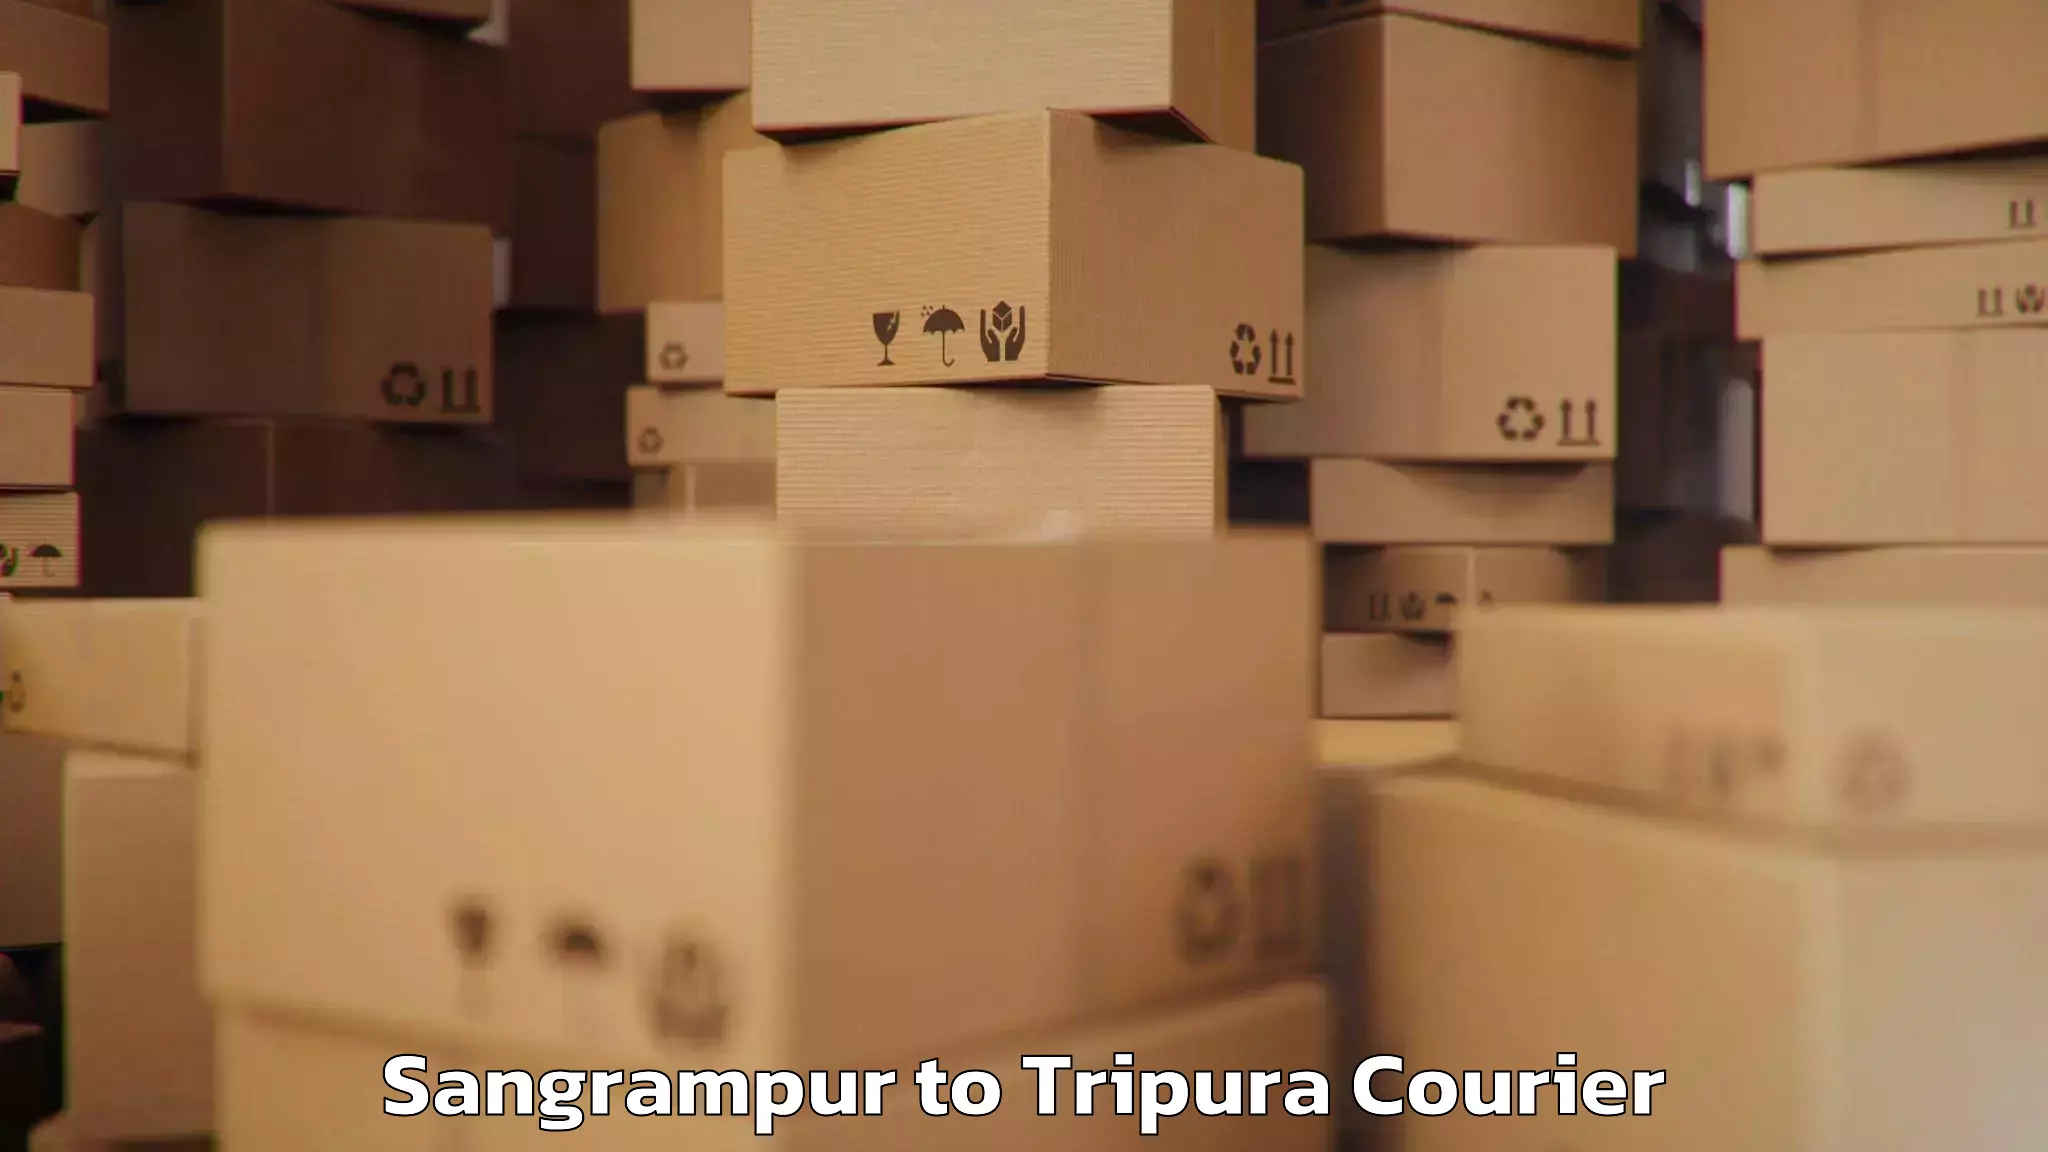 Baggage shipping calculator Sangrampur to Amarpur